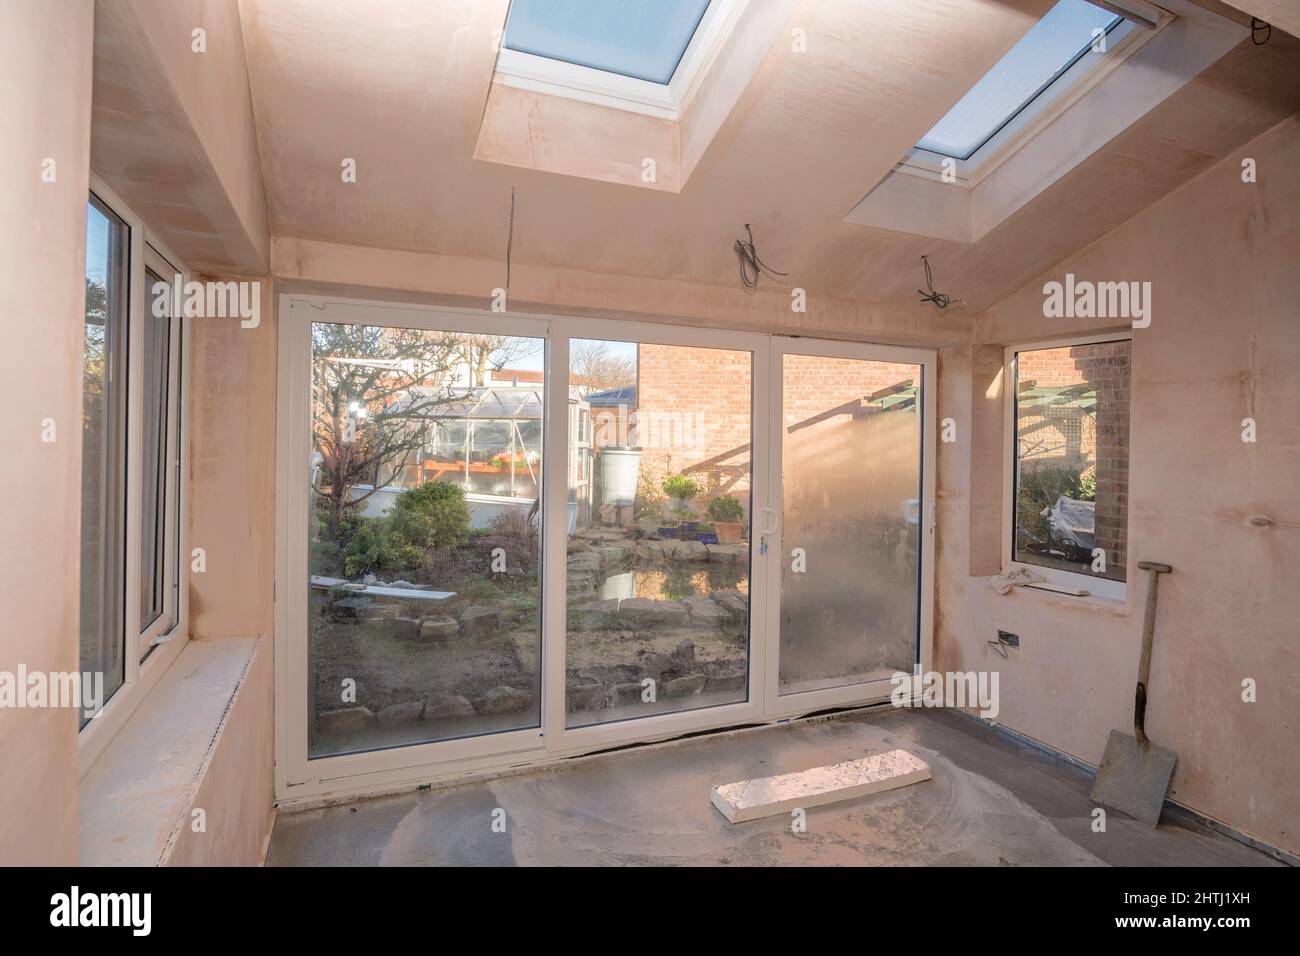 L'interno di una casa parzialmente completata estensione con una vista giardino in Inghilterra, Regno Unito Foto Stock